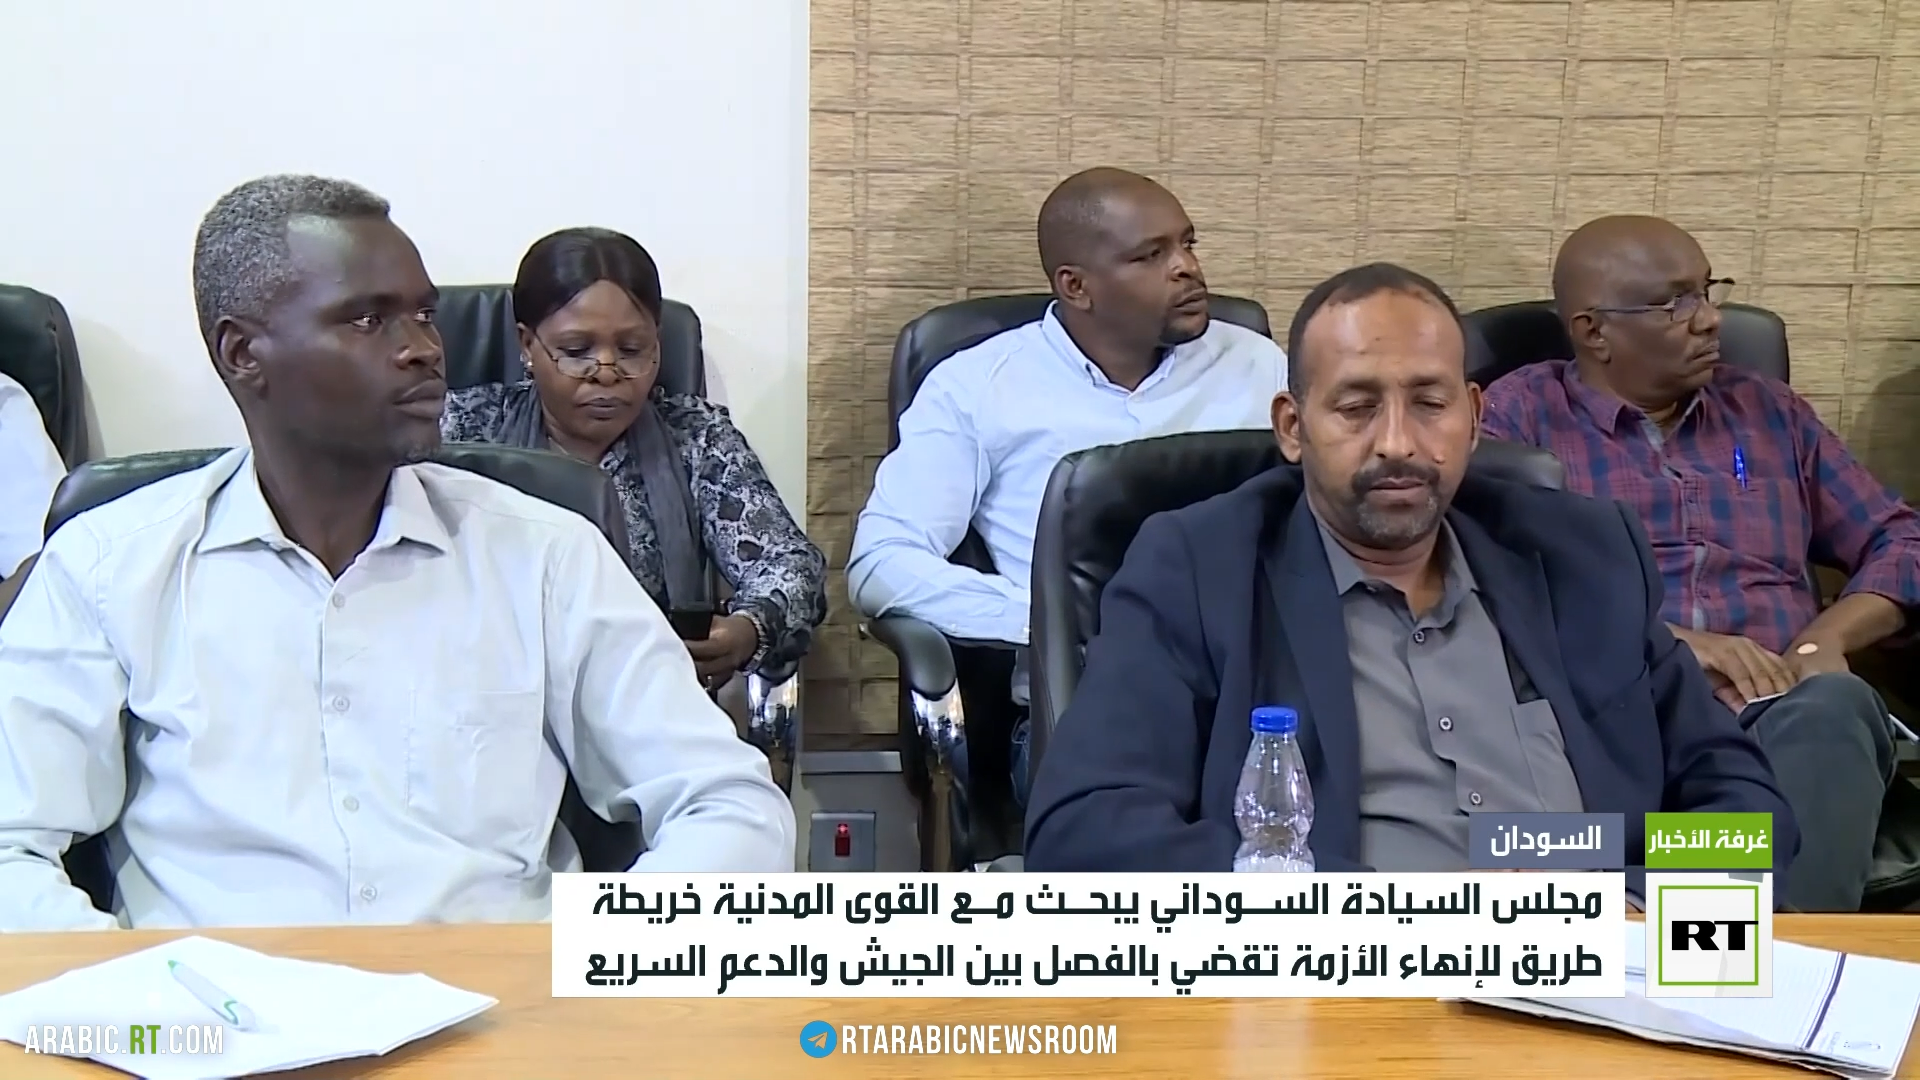 مجلس السيادة يبحث مع المدنيين سبل إنهاء أزمة السودان